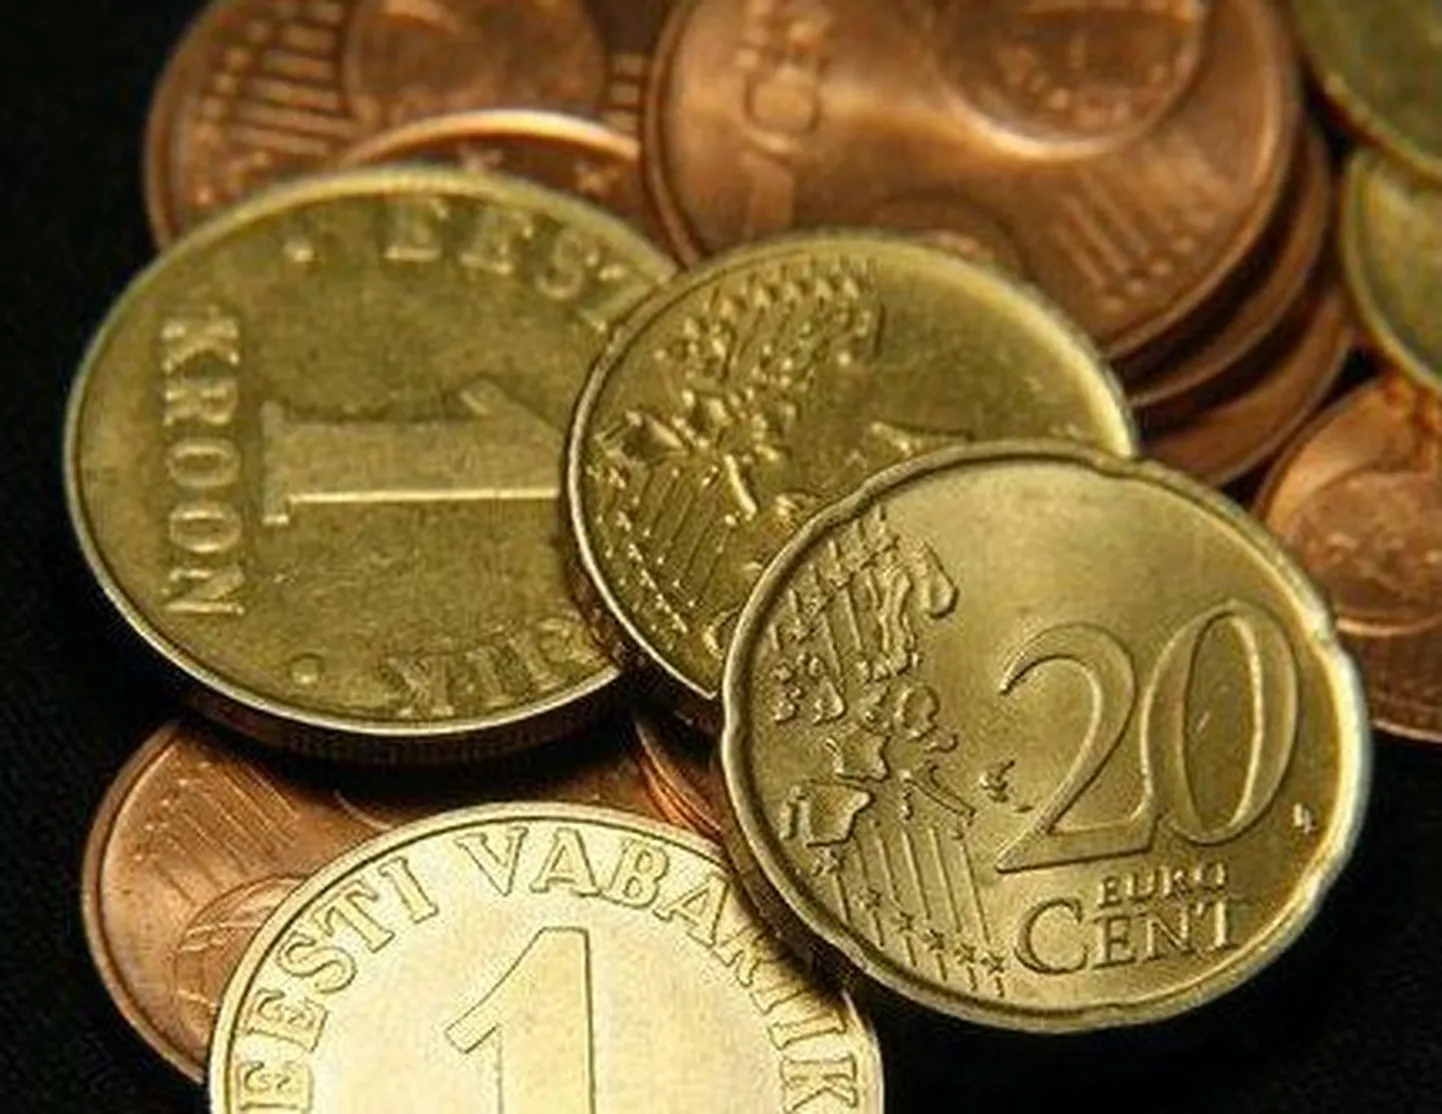 Монеты: кроны и евро